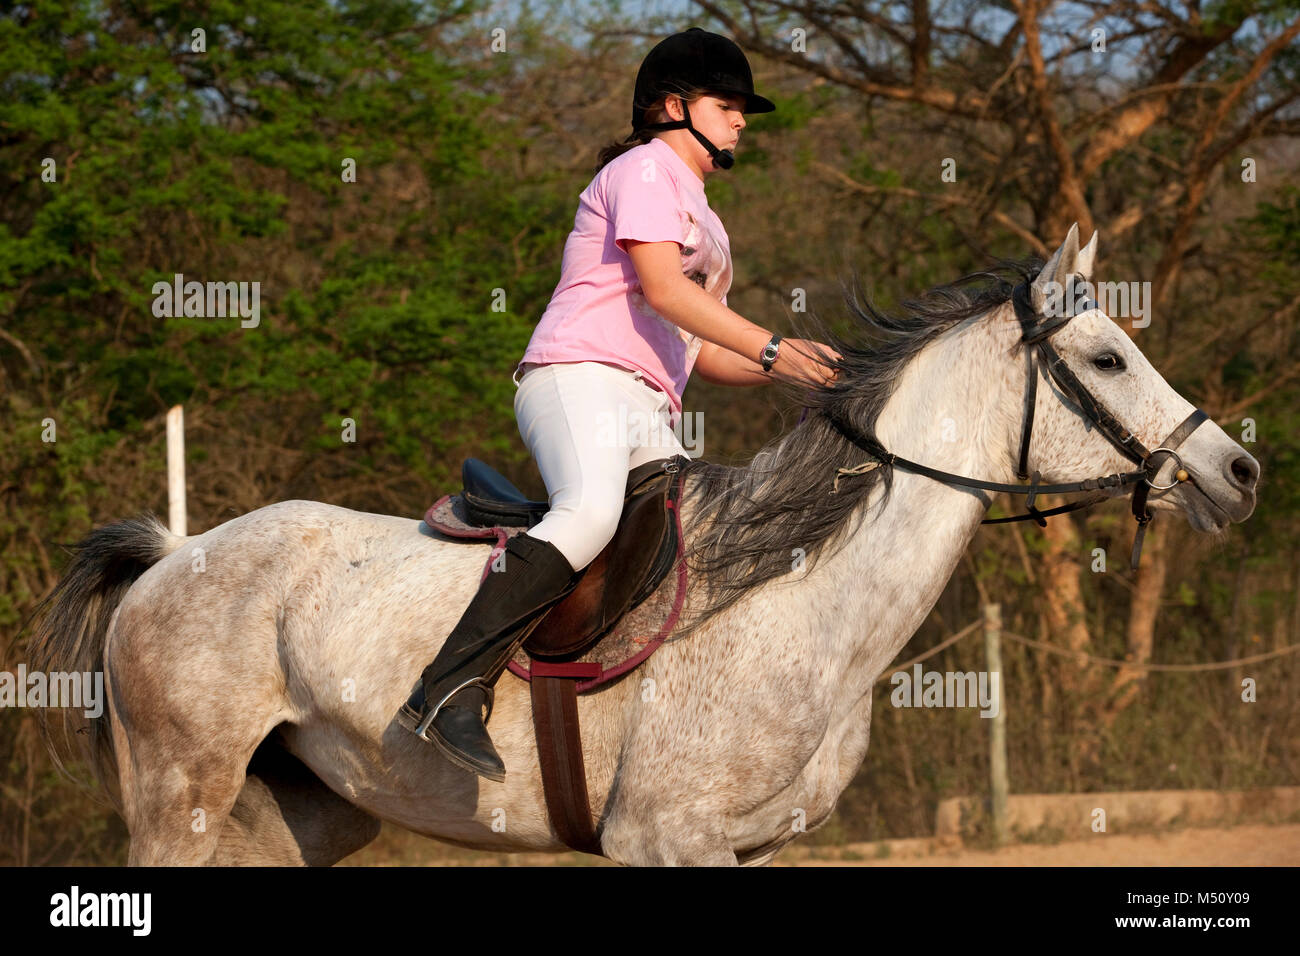 Adolescente equitación Foto de stock